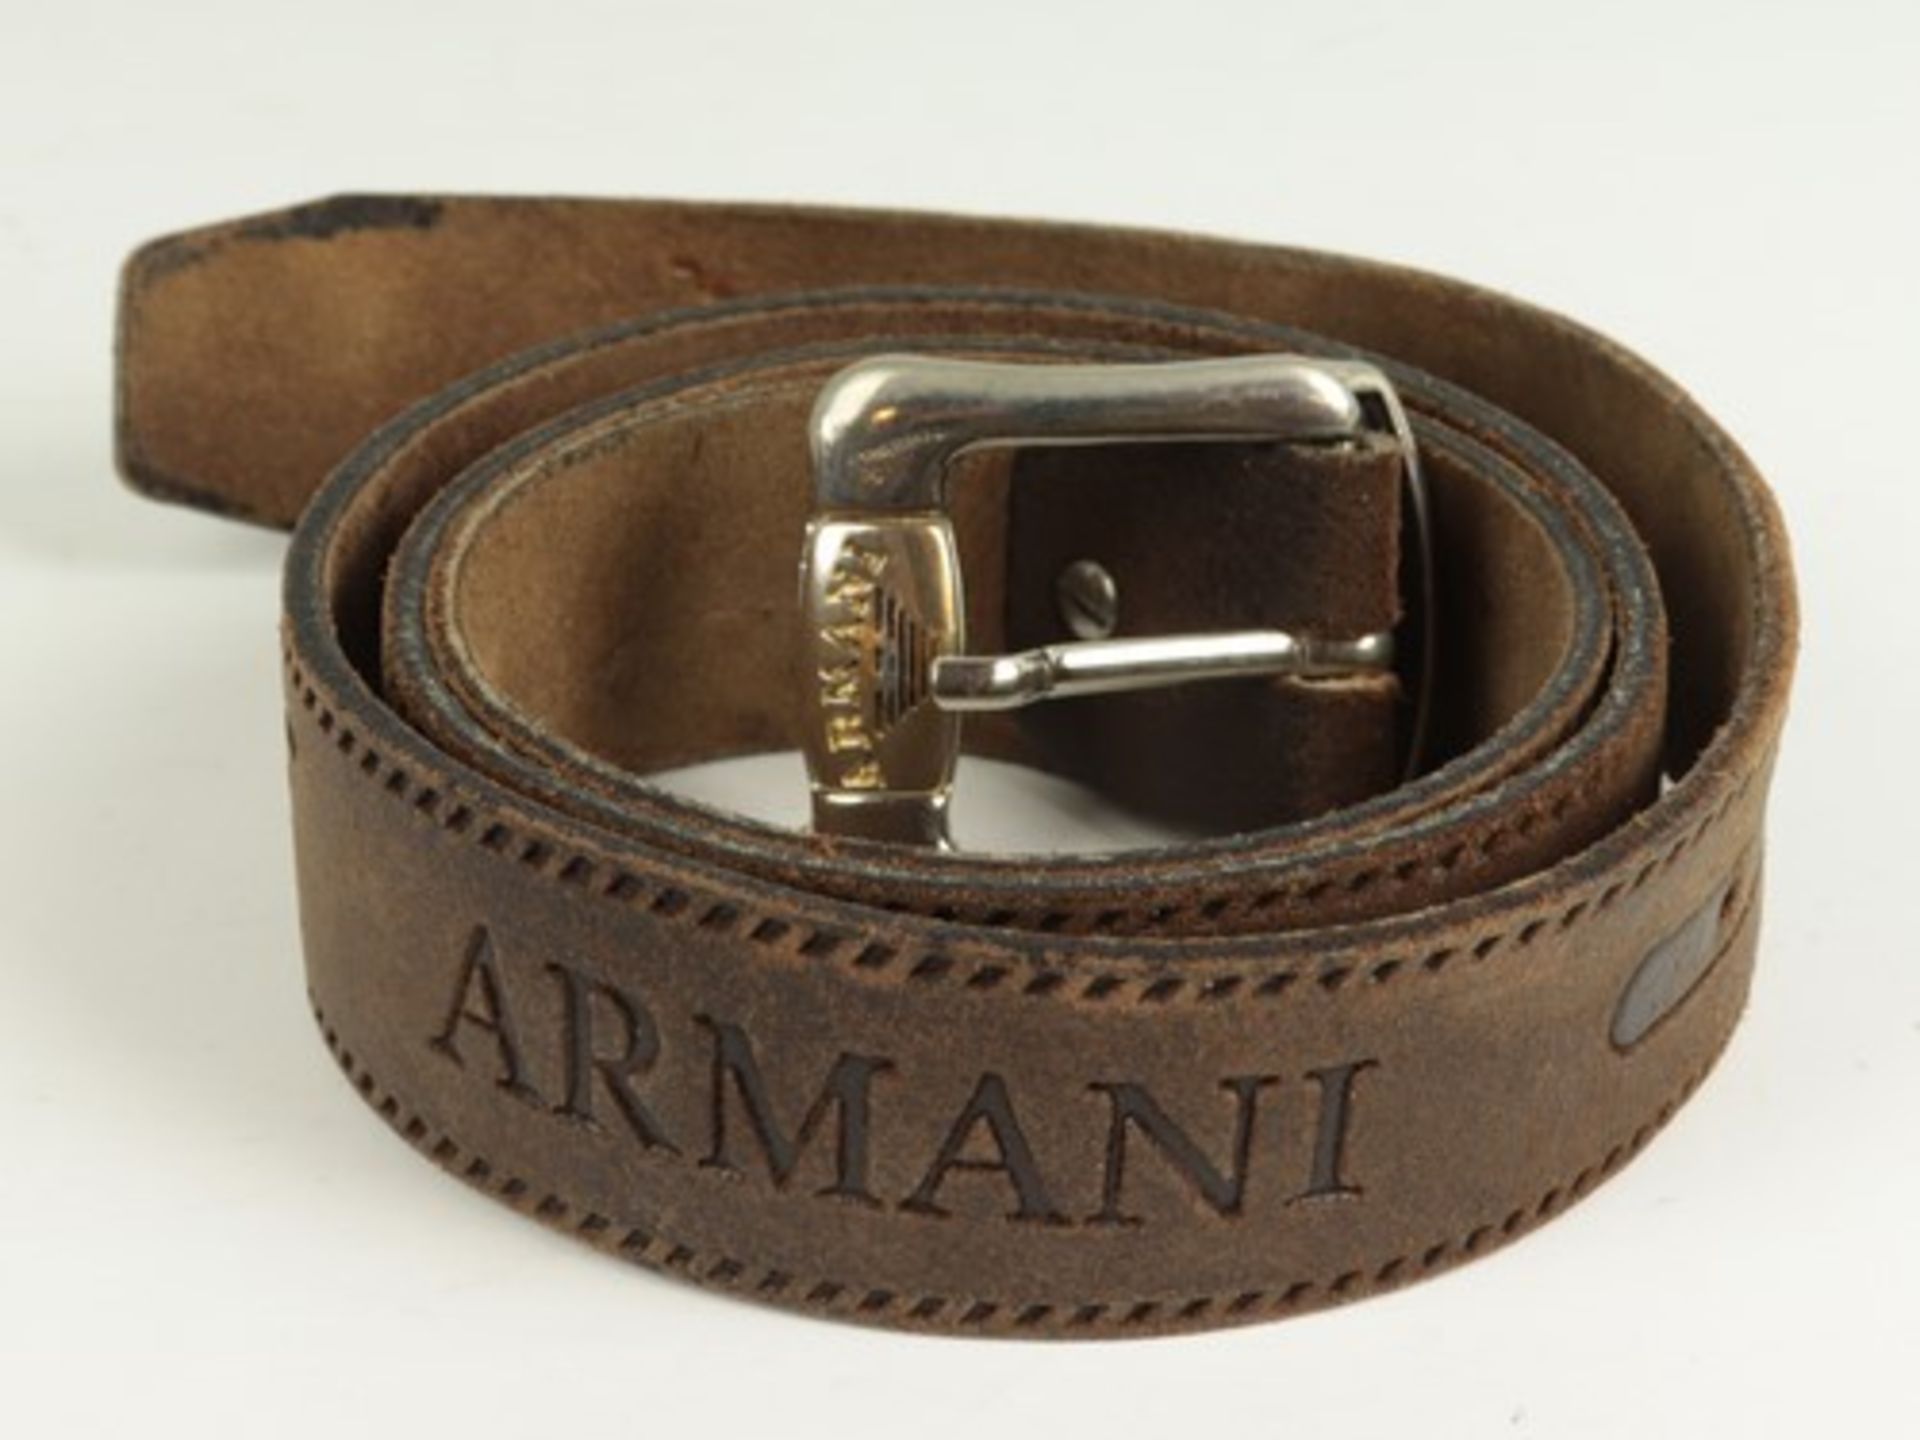 Armani - GürtelHerrengürtel, braunes Leder, geprägtes Emblem u. Schriftmuster, silber u. goldfarbene - Bild 2 aus 2